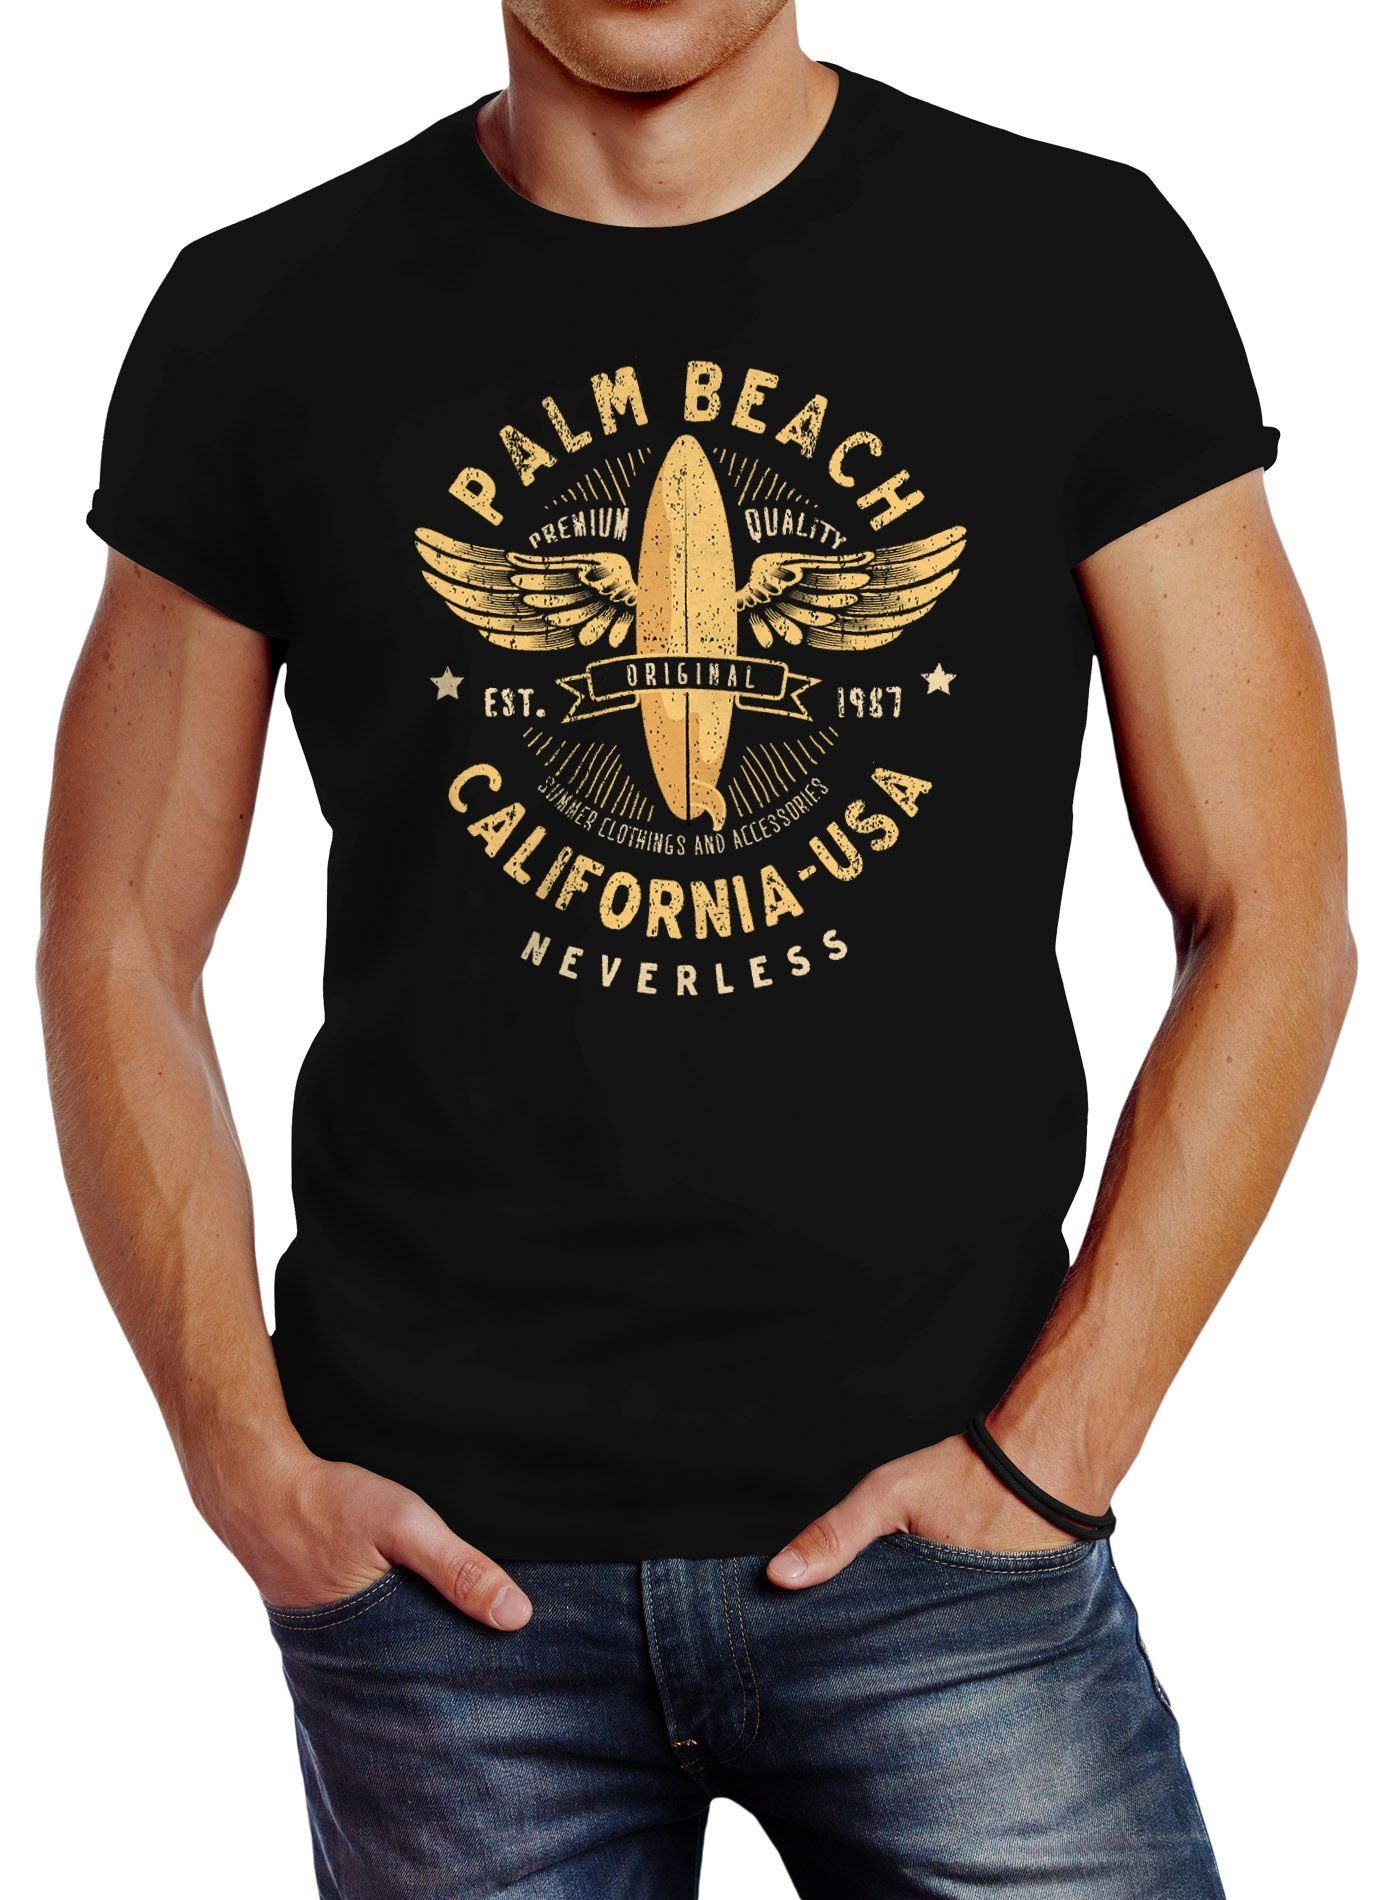 Neverless Print-Shirt Neverless® Herren T-Shirt Surfing Motiv Vintage Effekt Palm Beach California USA Schriftzug Fashion Streetstyle mit Print